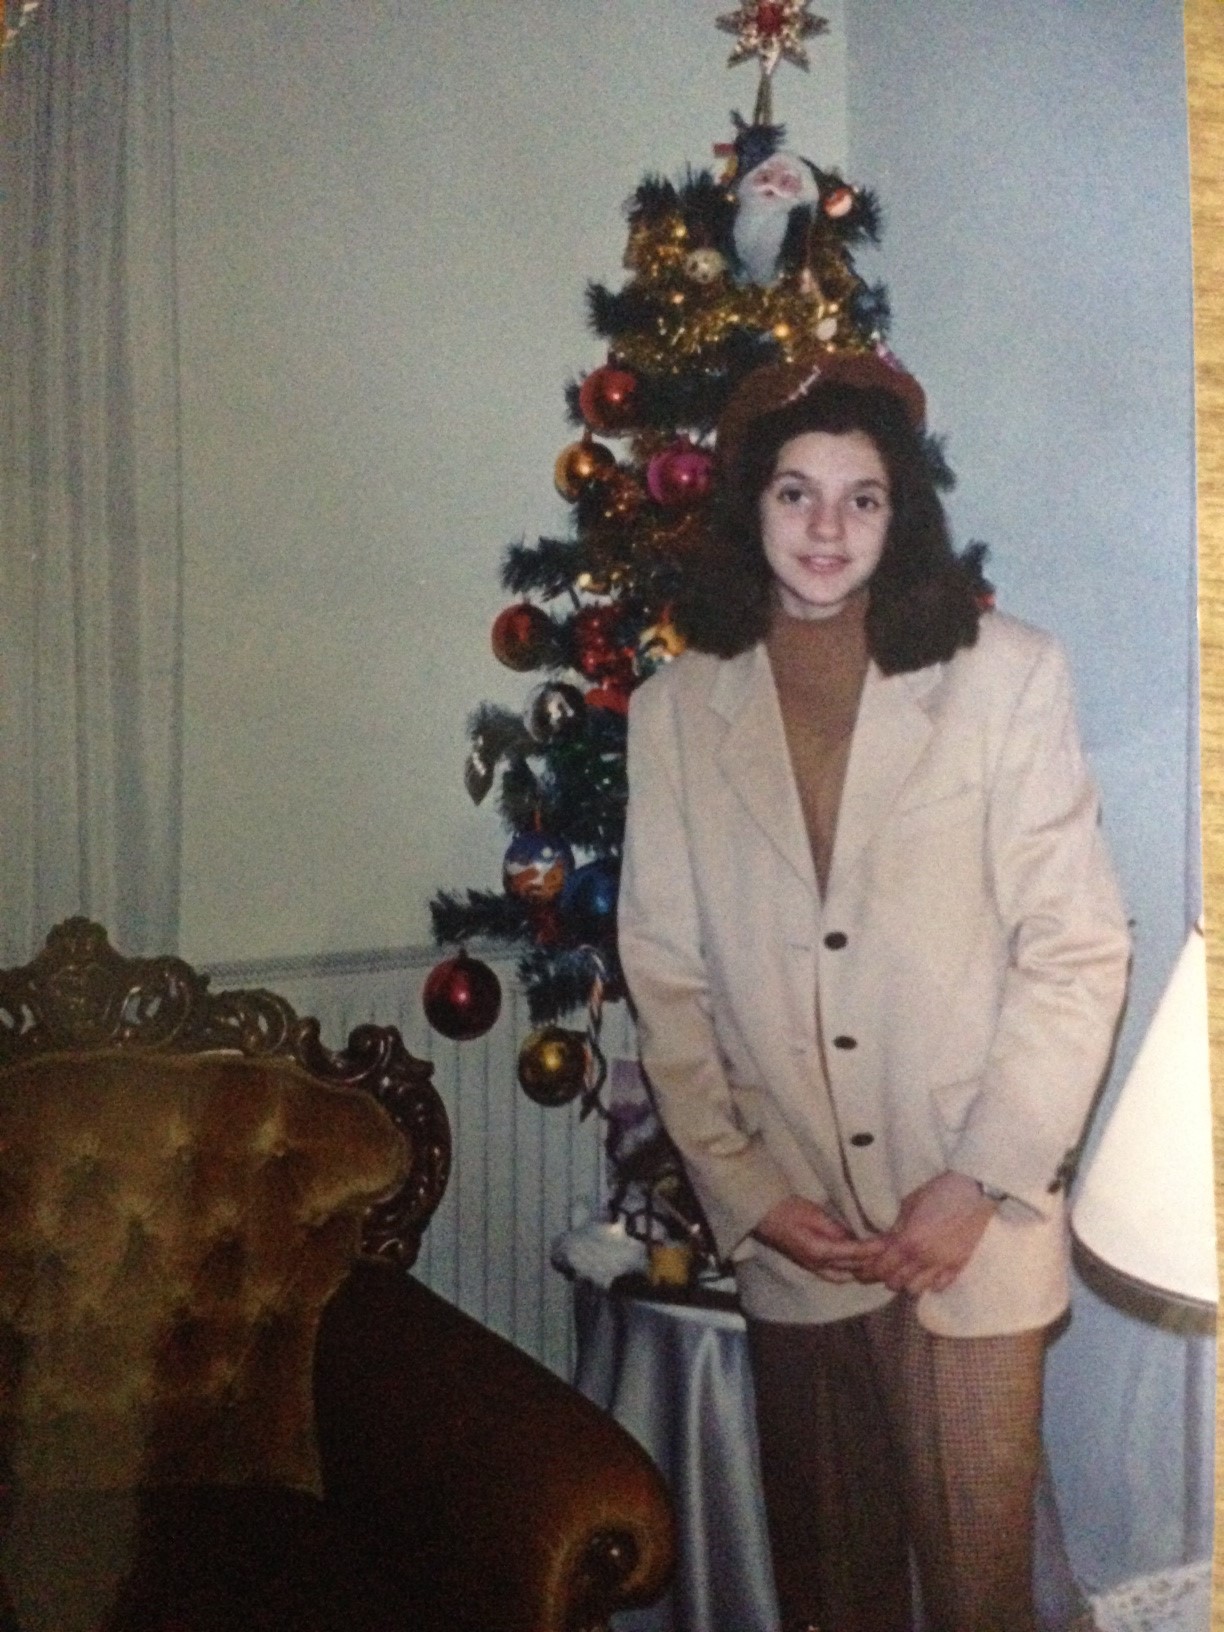 ΑΠΙΣΤΕΥΤΟ   Δείτε την Σάσα Σταμάτη να ποζάρει μπροστά στο Χριστουγεννιάτικο δέντρο πριν χρόνια [pics]